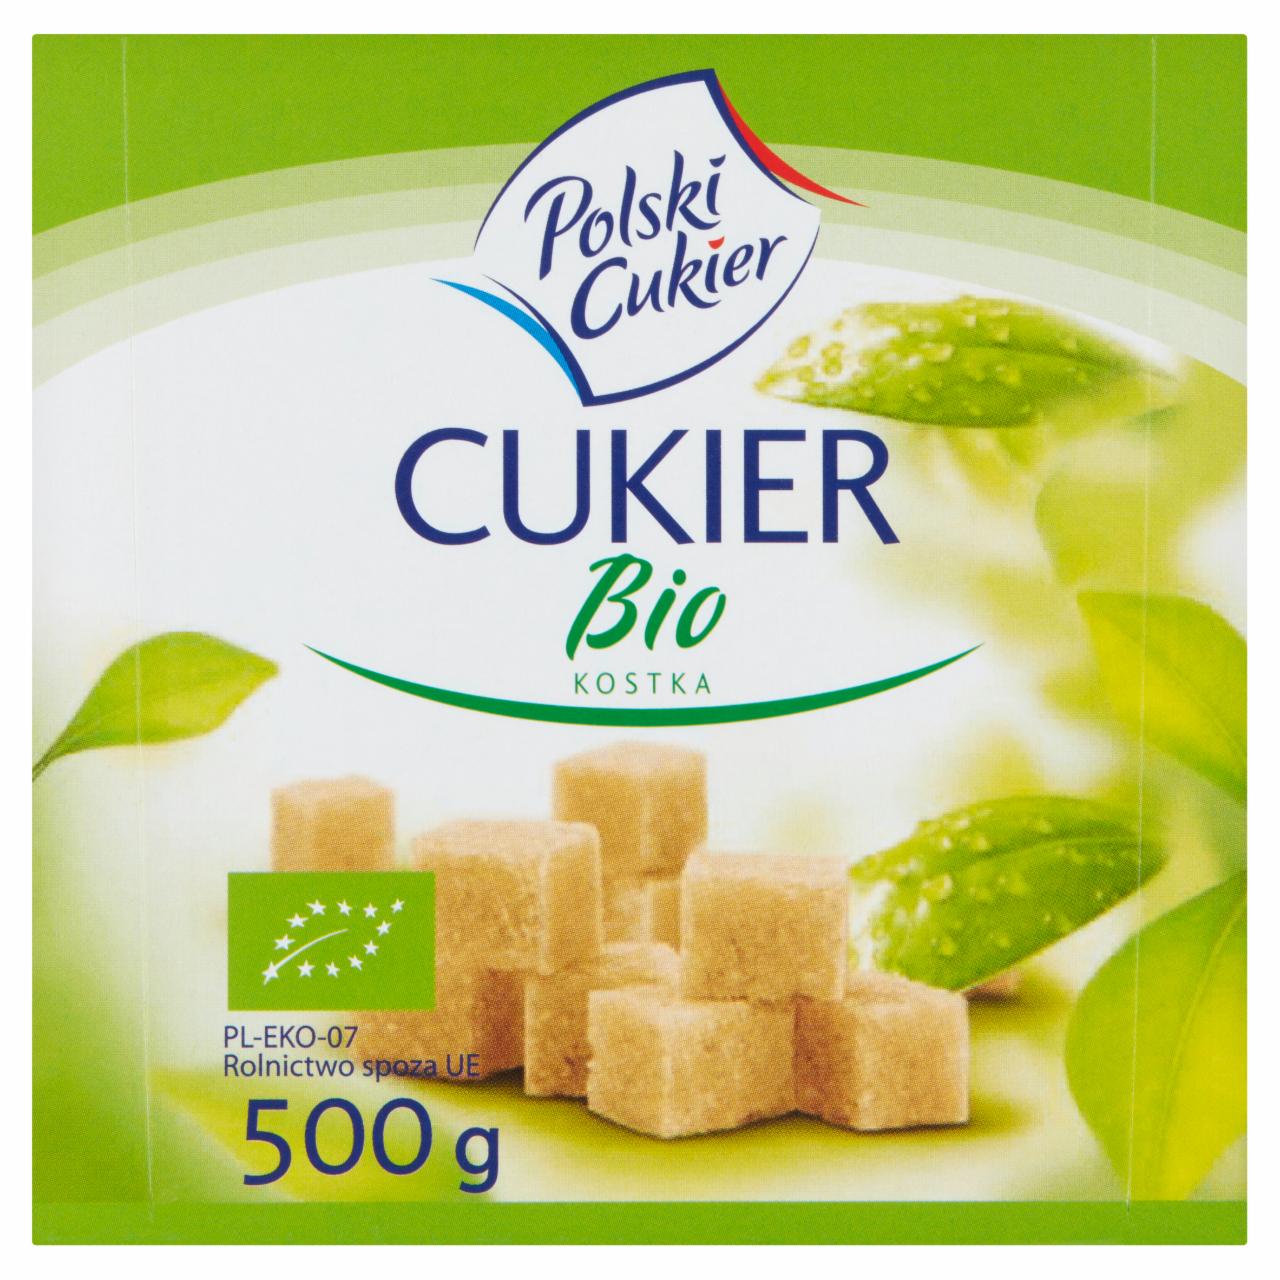 Zdjęcia - Polski Cukier Cukier Bio kostka 500 g